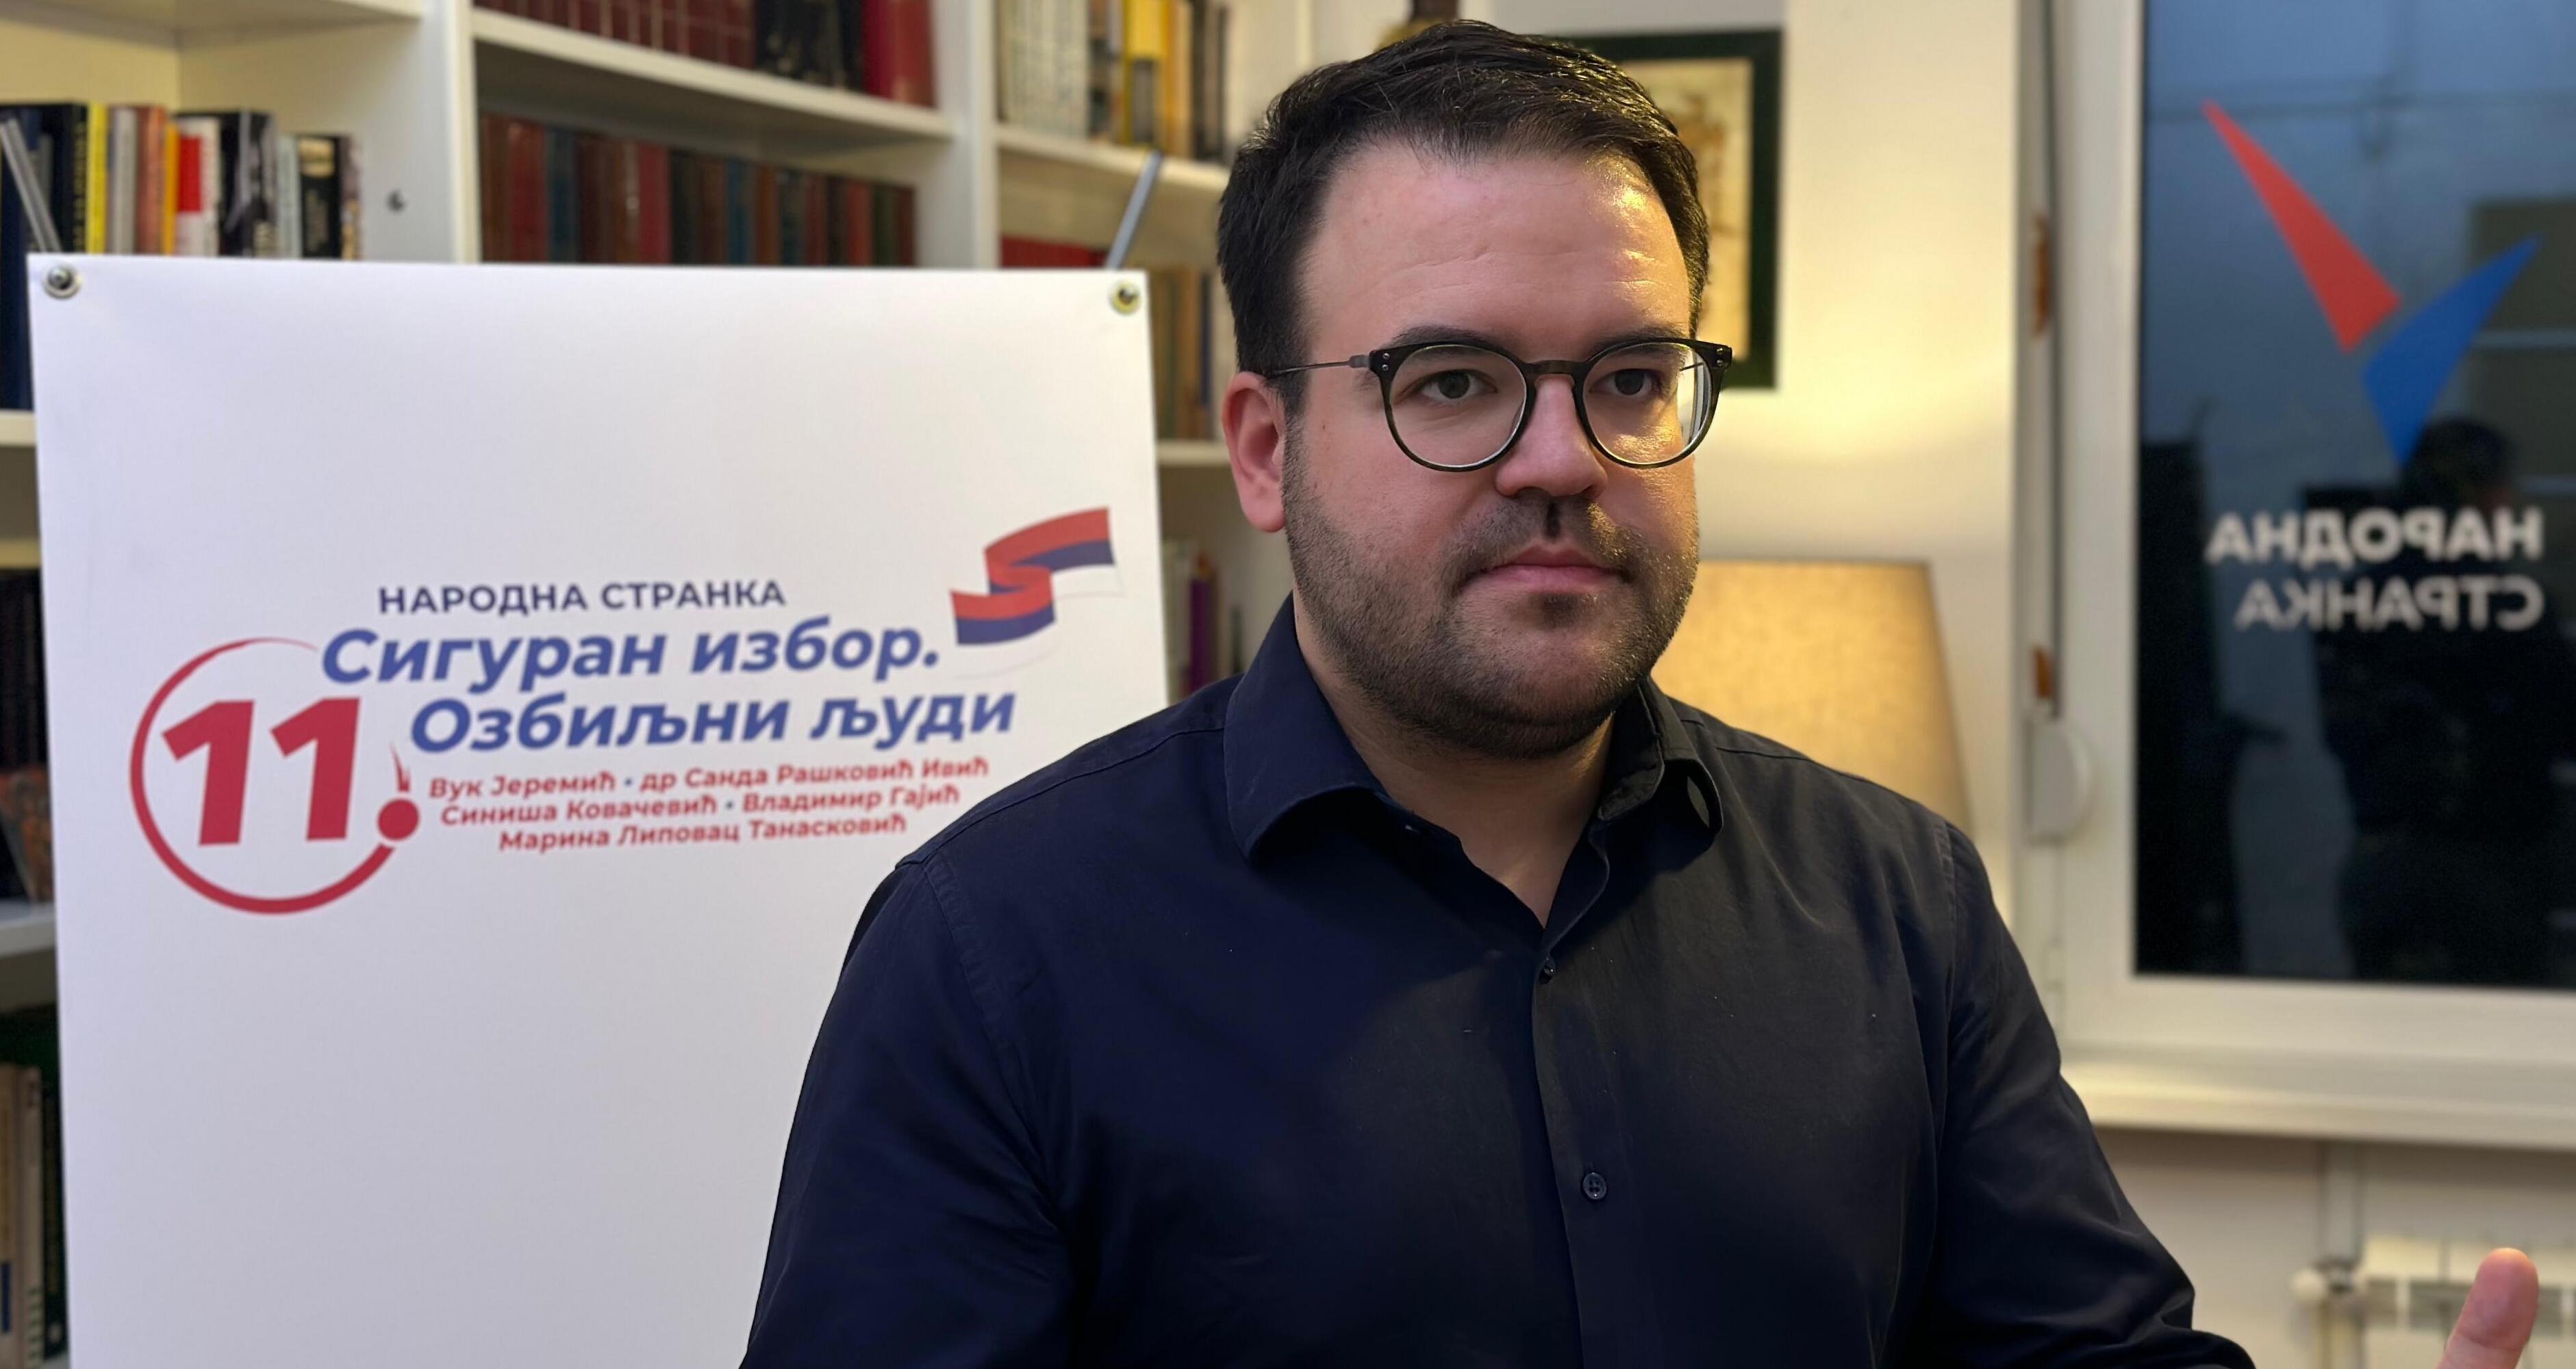 Јовановић: Народна странка је сигуран избор за промену здравственог система, 80.000 људи чека на операције